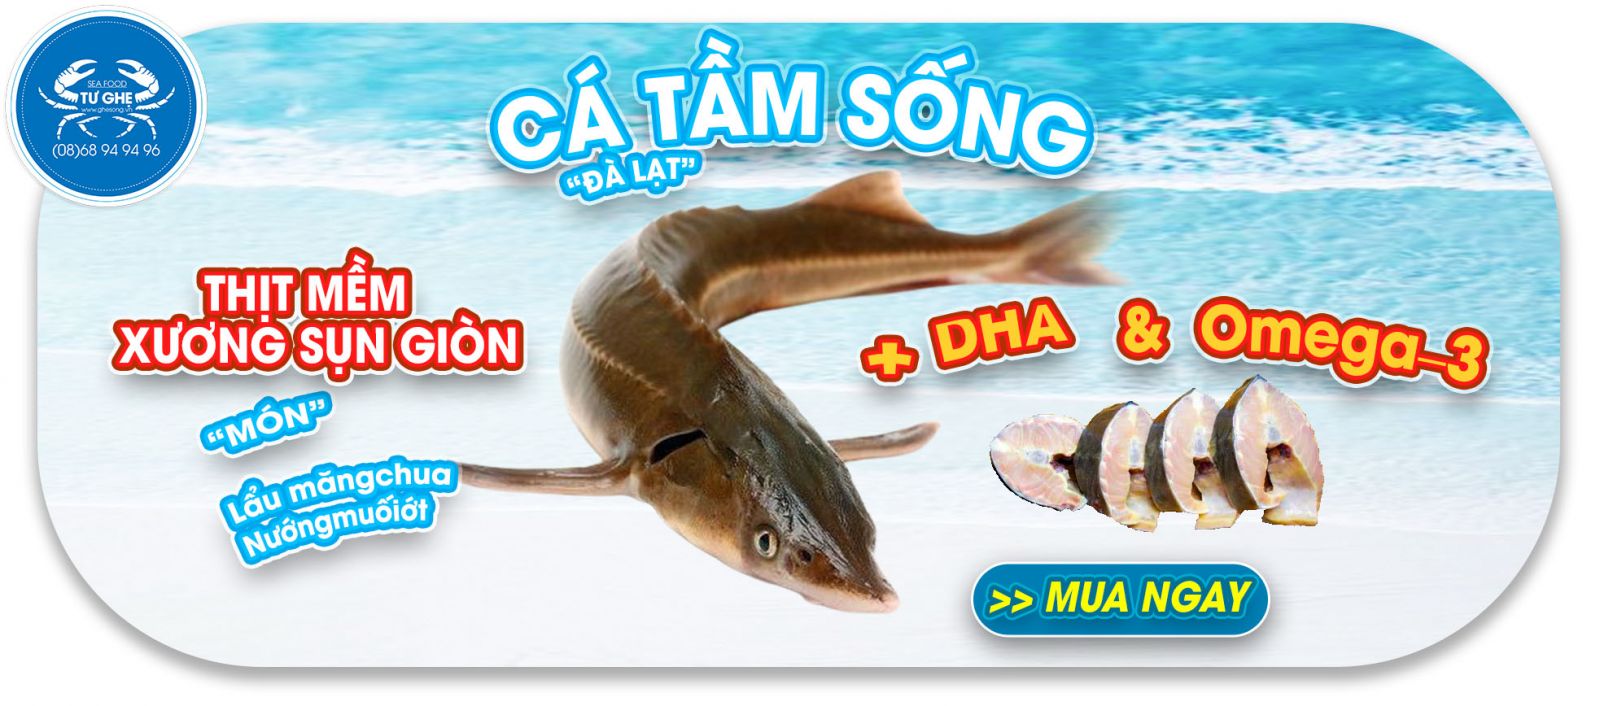 ca-tam-song